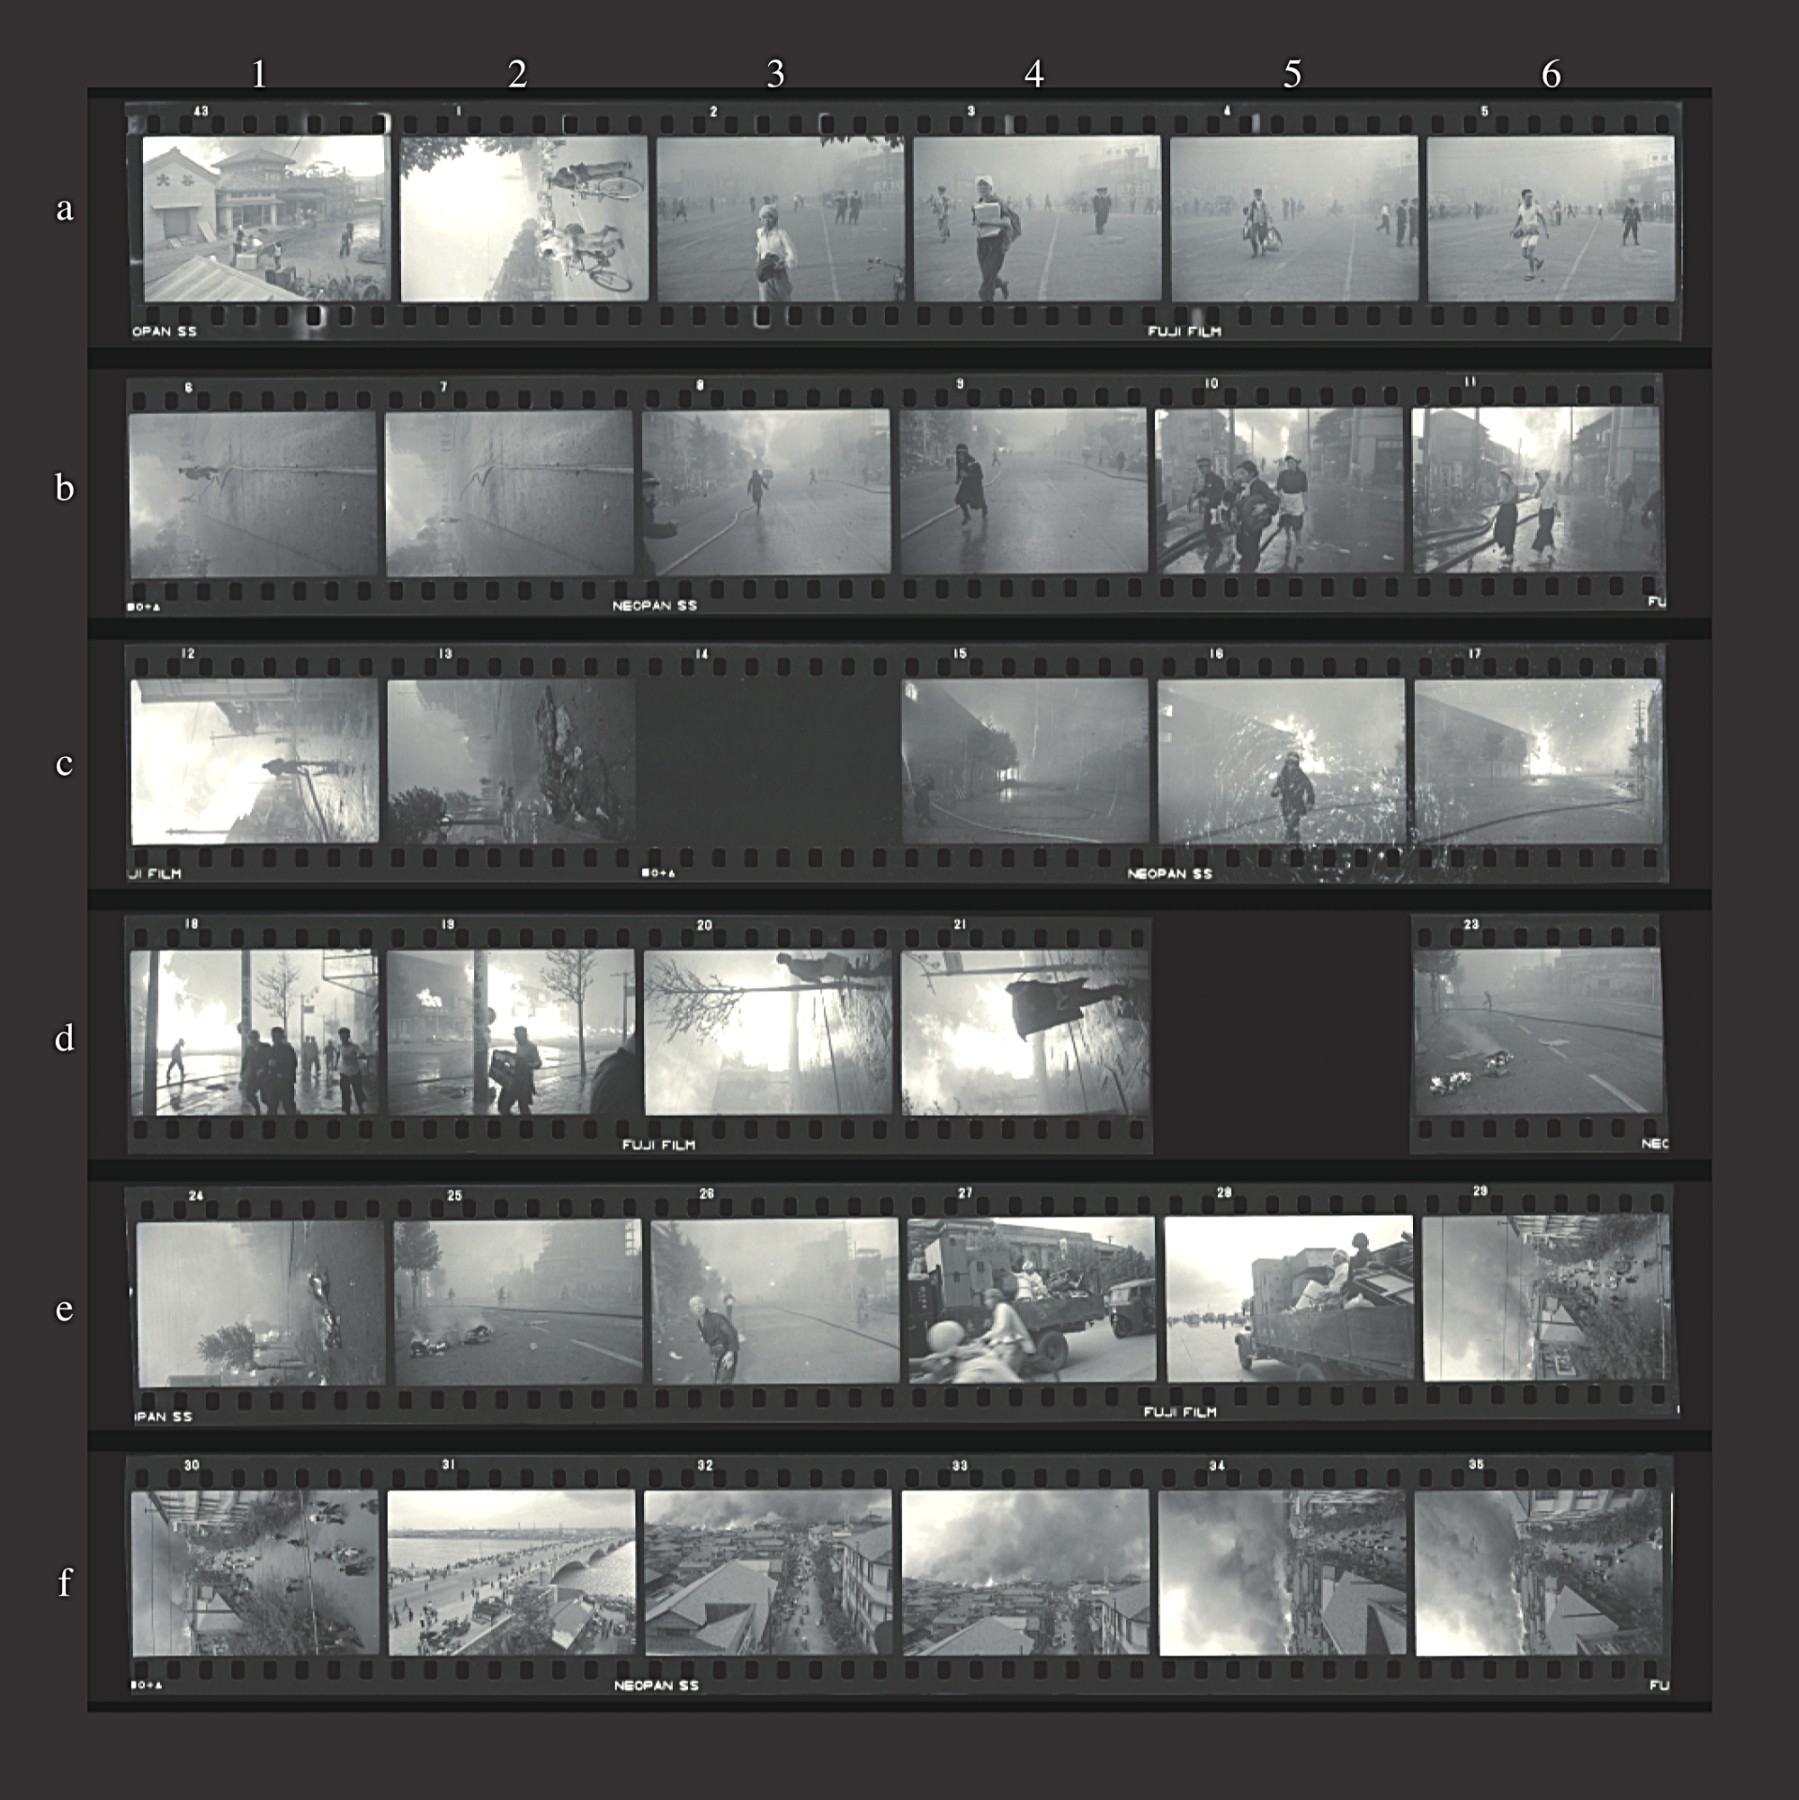 「小林新一展」より、1955年の新潟大火を取材した時のフィルムロール。発表用にプリントされたのは１カットだけだが、コマの行間にさまざまな情報が読み取れる。